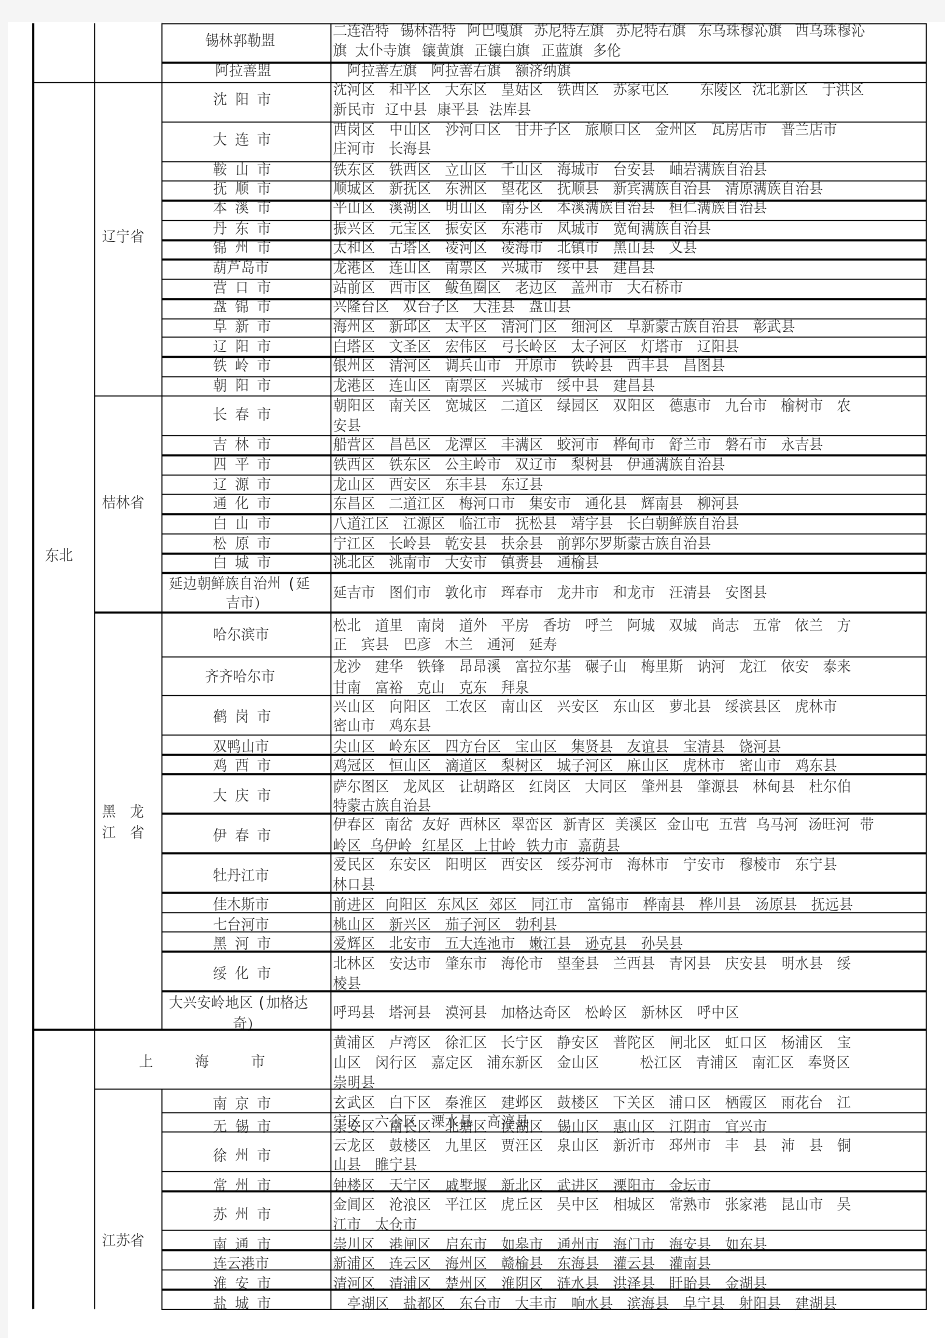 2018年最新中国地区省市县行政划分表